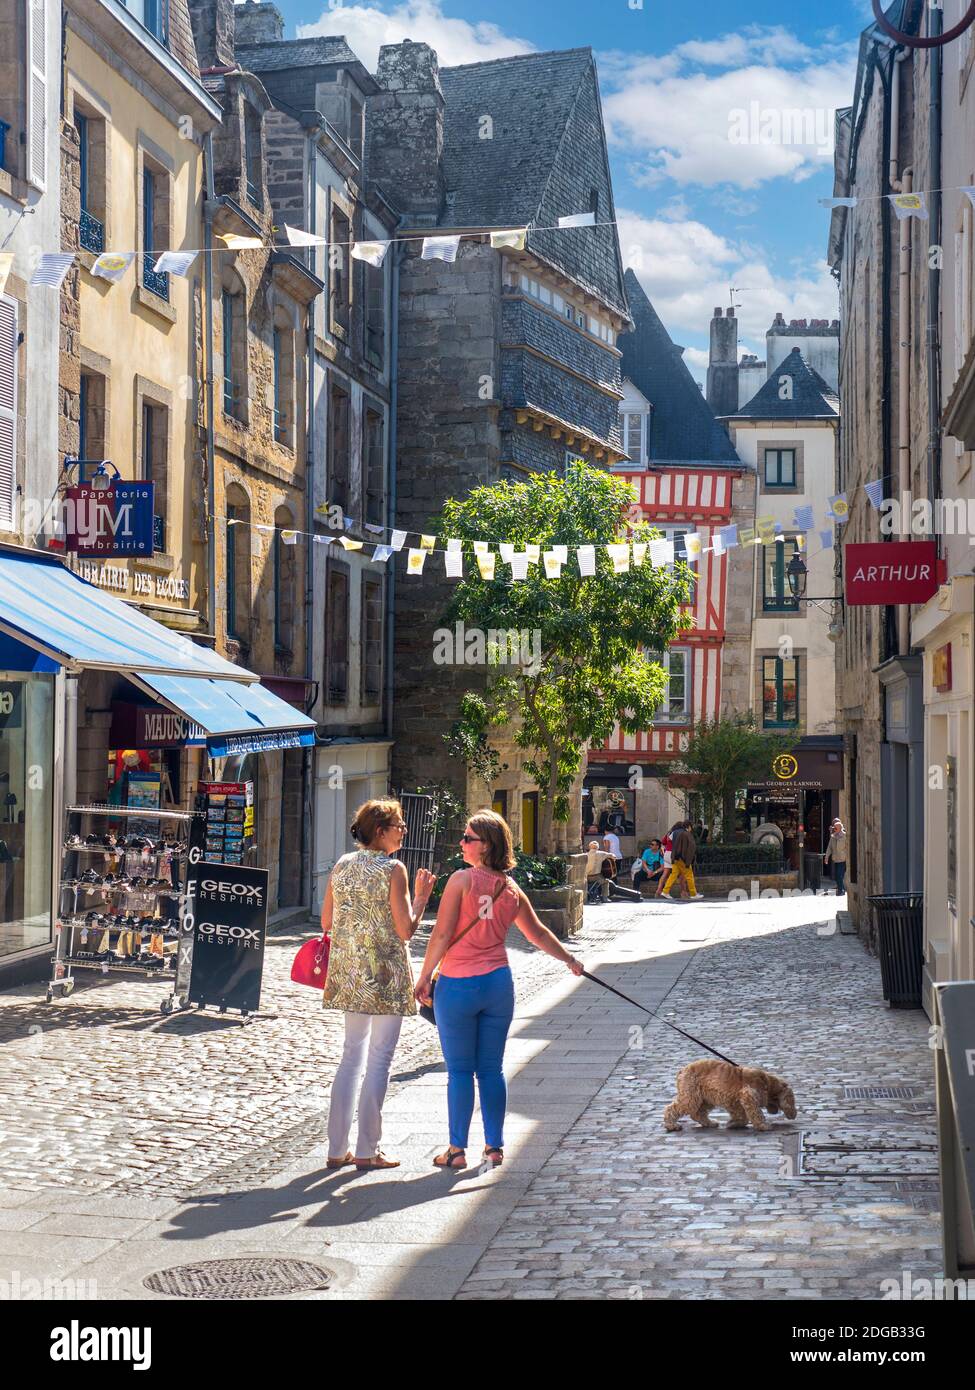 Quimper BRETAGNA stile di vita locali cane a piedi parlare centro storico centro commerciale medievale pedonale con i turisti amanti dello shopping estivo Quimper Bretagna Finistère Francia Foto Stock